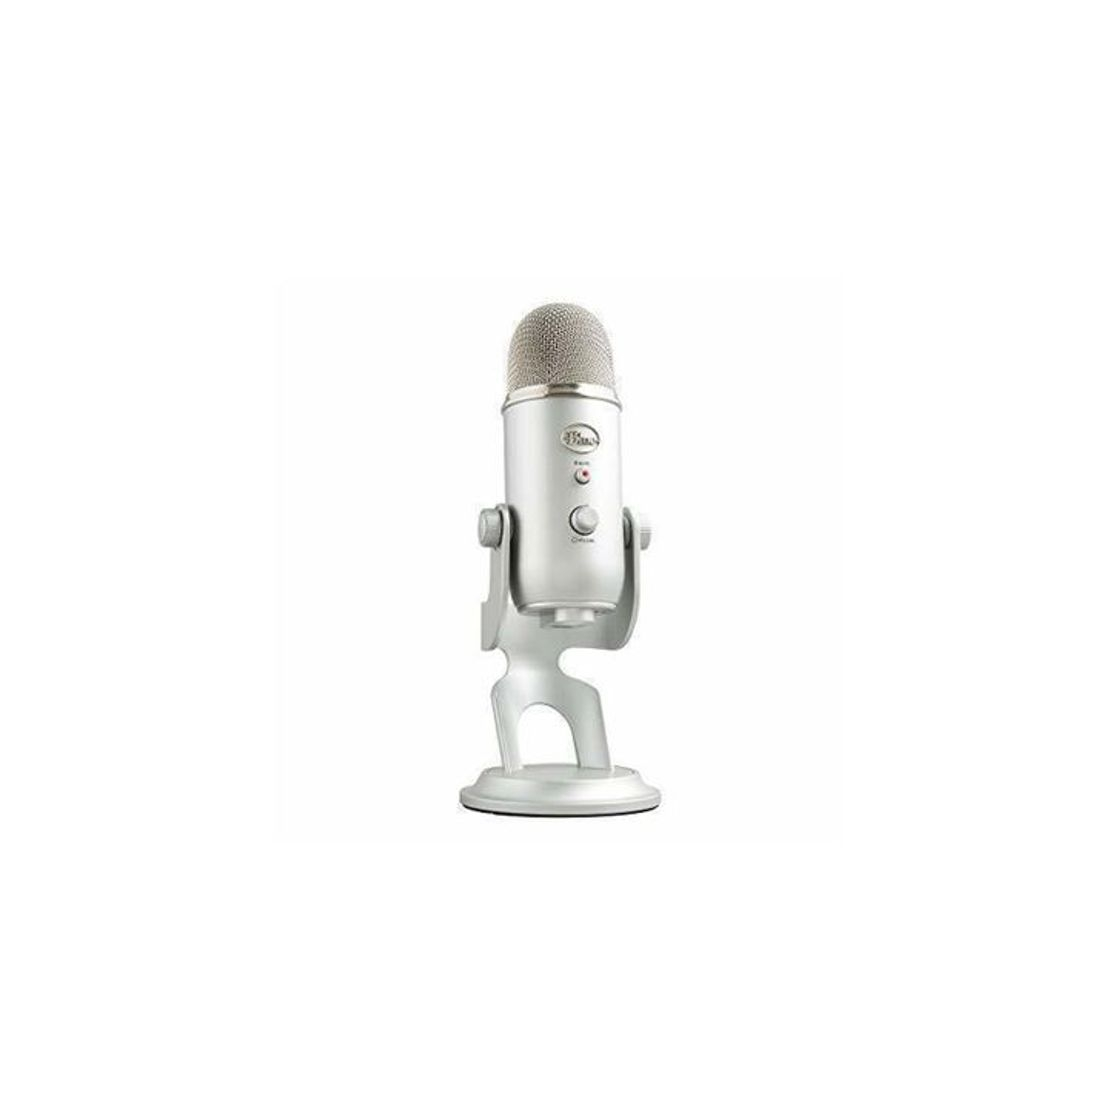 Blue Microphones Yeti - Micrófono USB para grabación y transmisión en PC